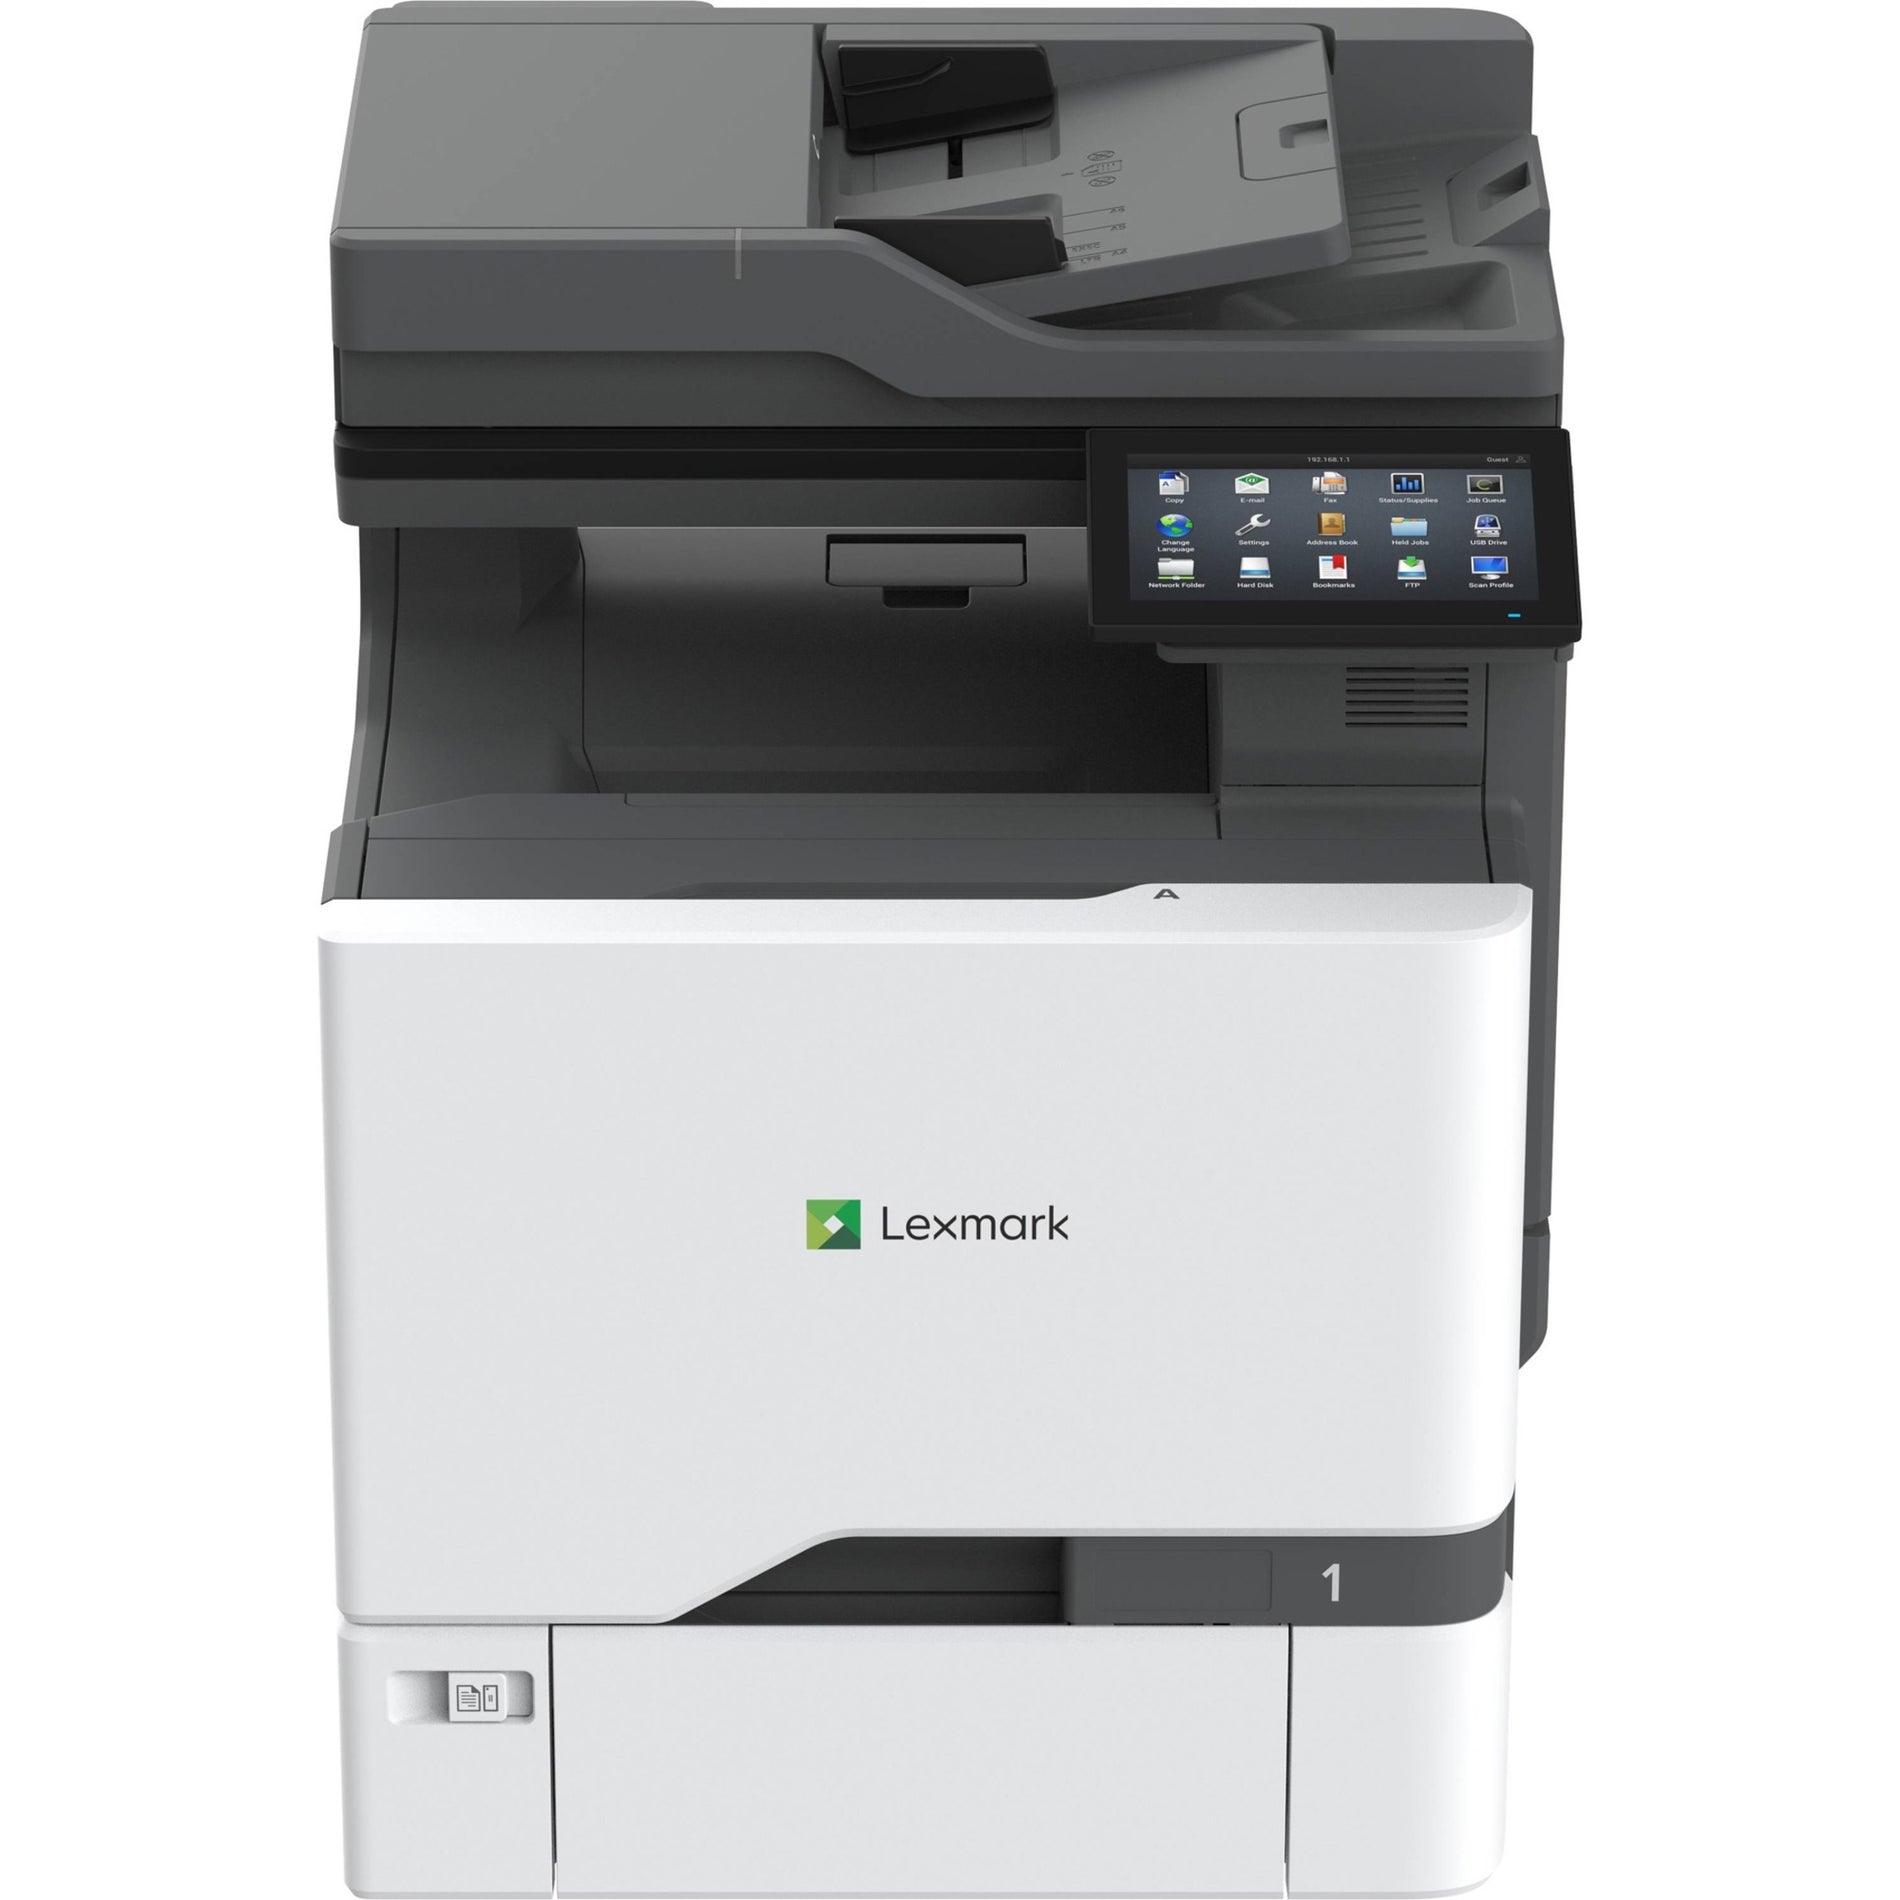 ليكسمارك 47C9500 CX730de طابعة متعددة الوظائف بتقنية الليزر اللونية، طباعة ذاتية الطباعة الثنائية التلقائية، سرعة الطباعة 42 صفحة في الدقيقة، دقة الطباعة 2400 × 600 نقطة في البوصة